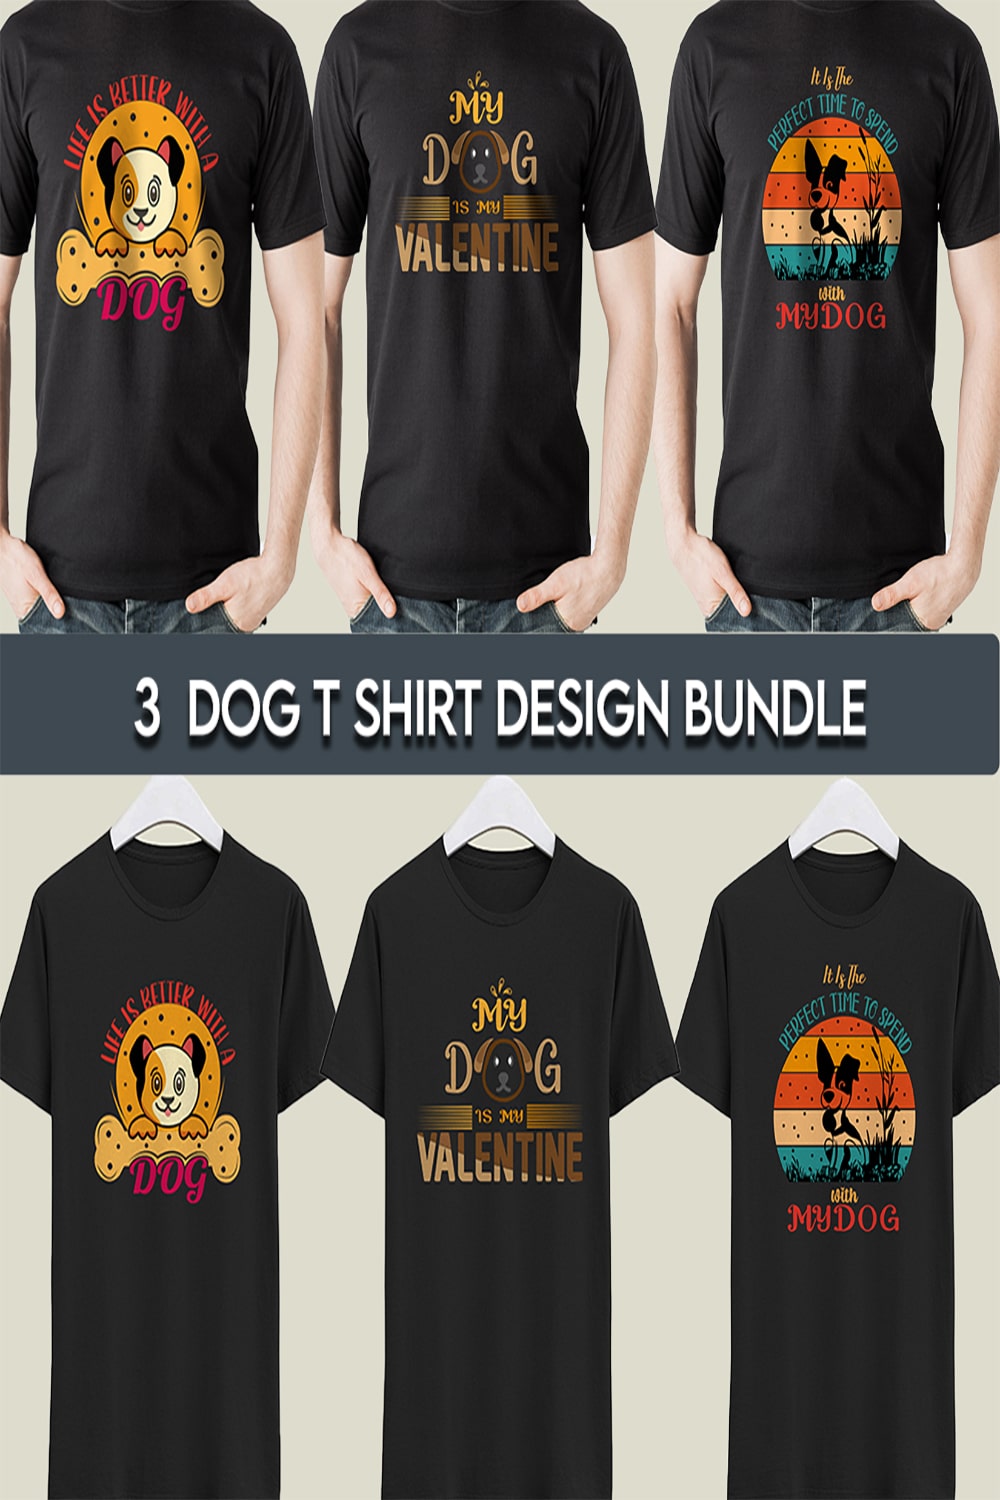 3 Dog T-shirt Design Bundle Pinterest collage image.